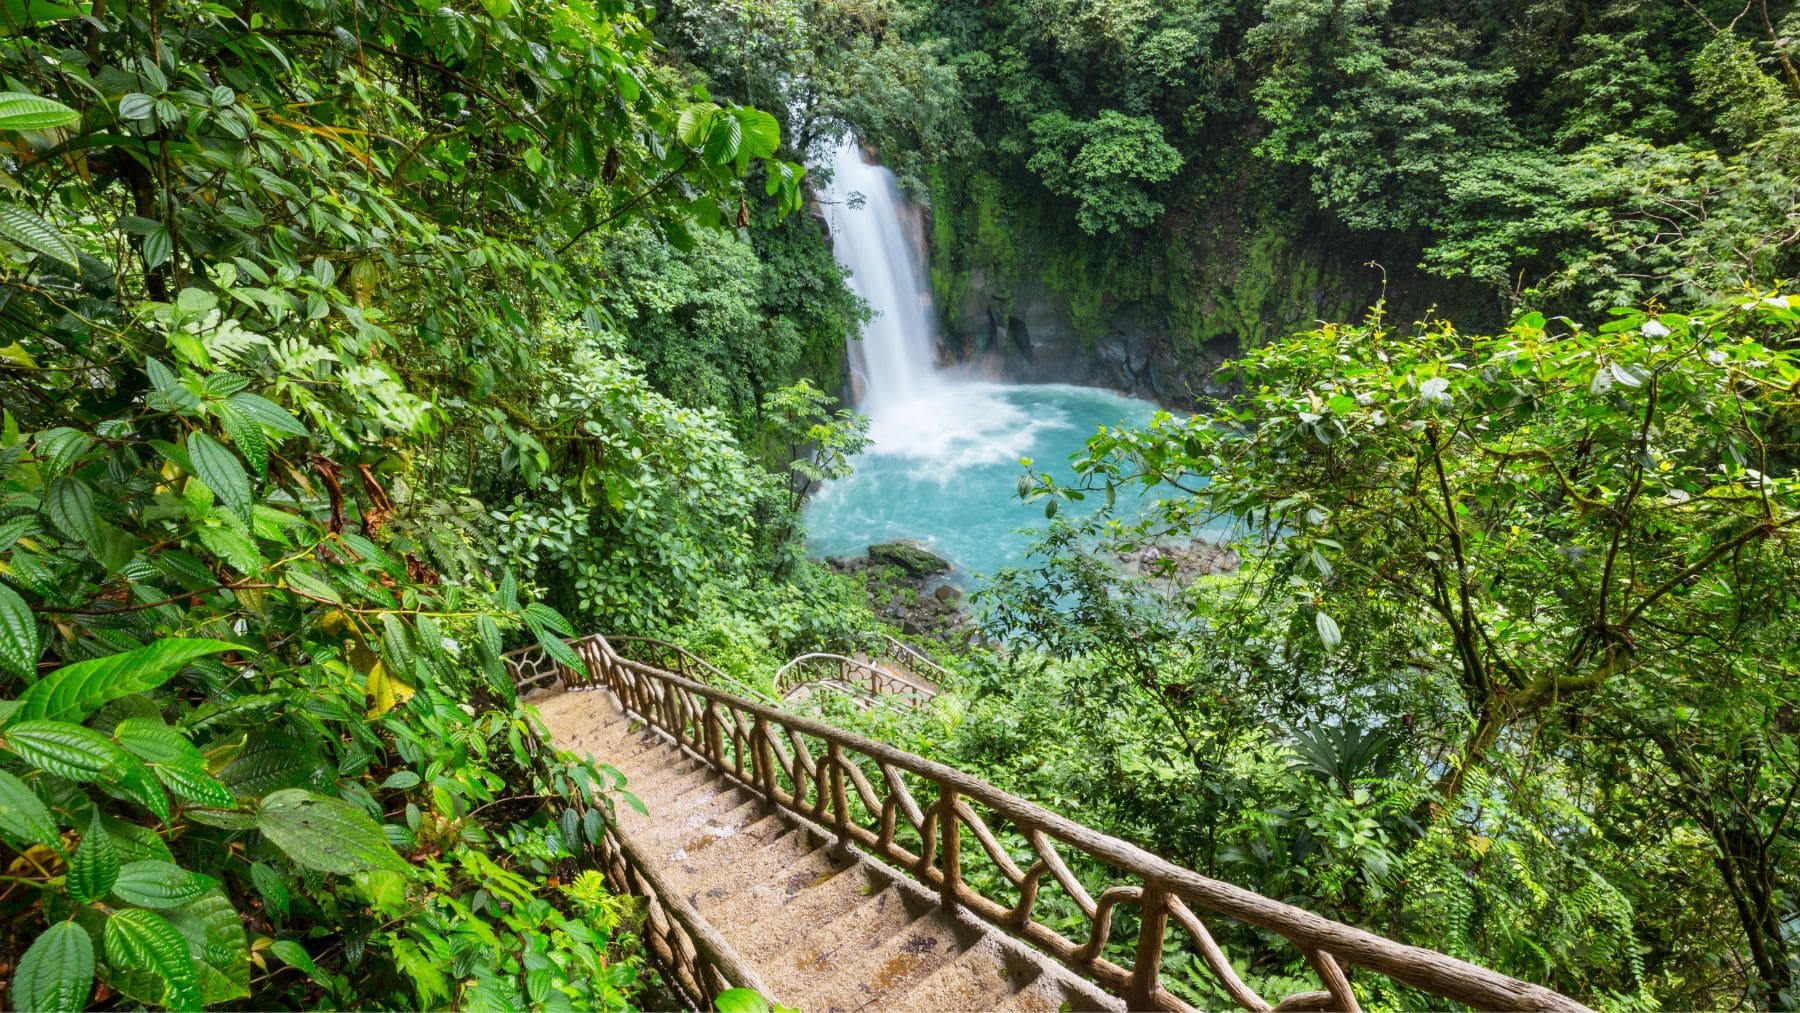 Costa Rica.